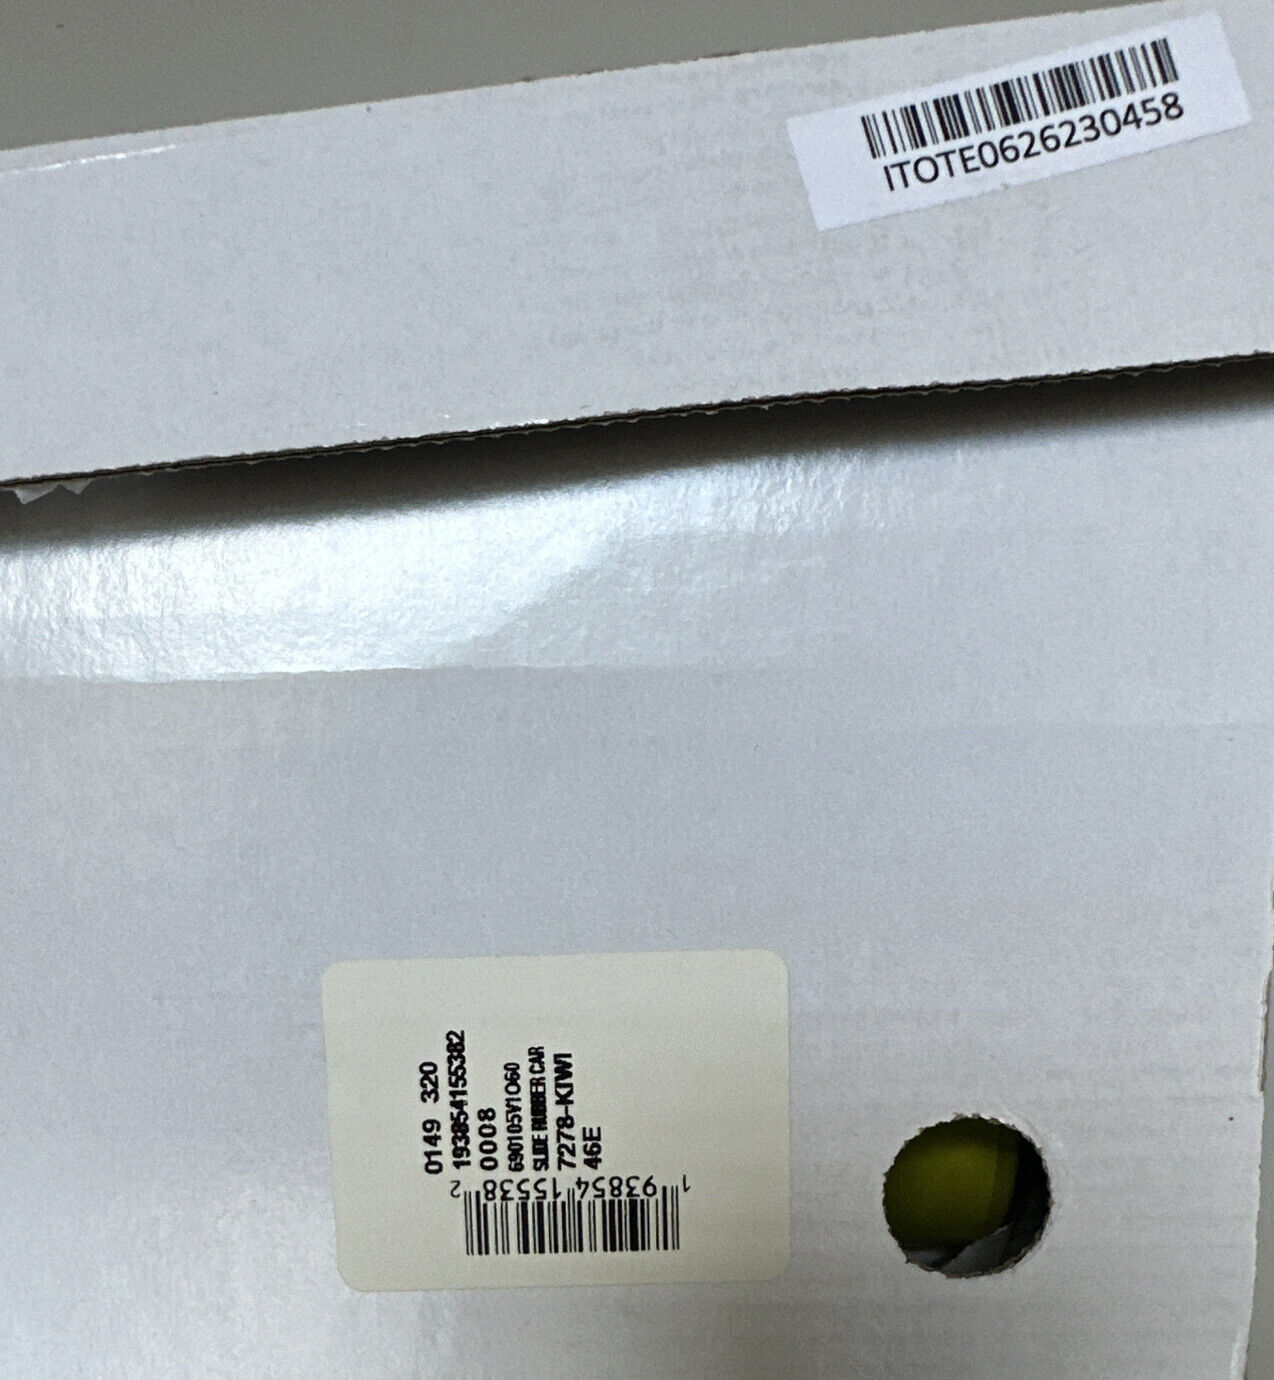 Новые мужские резиновые шлепанцы Kiwi Bottega Veneta за 420 долларов США (46 евро) 690105 